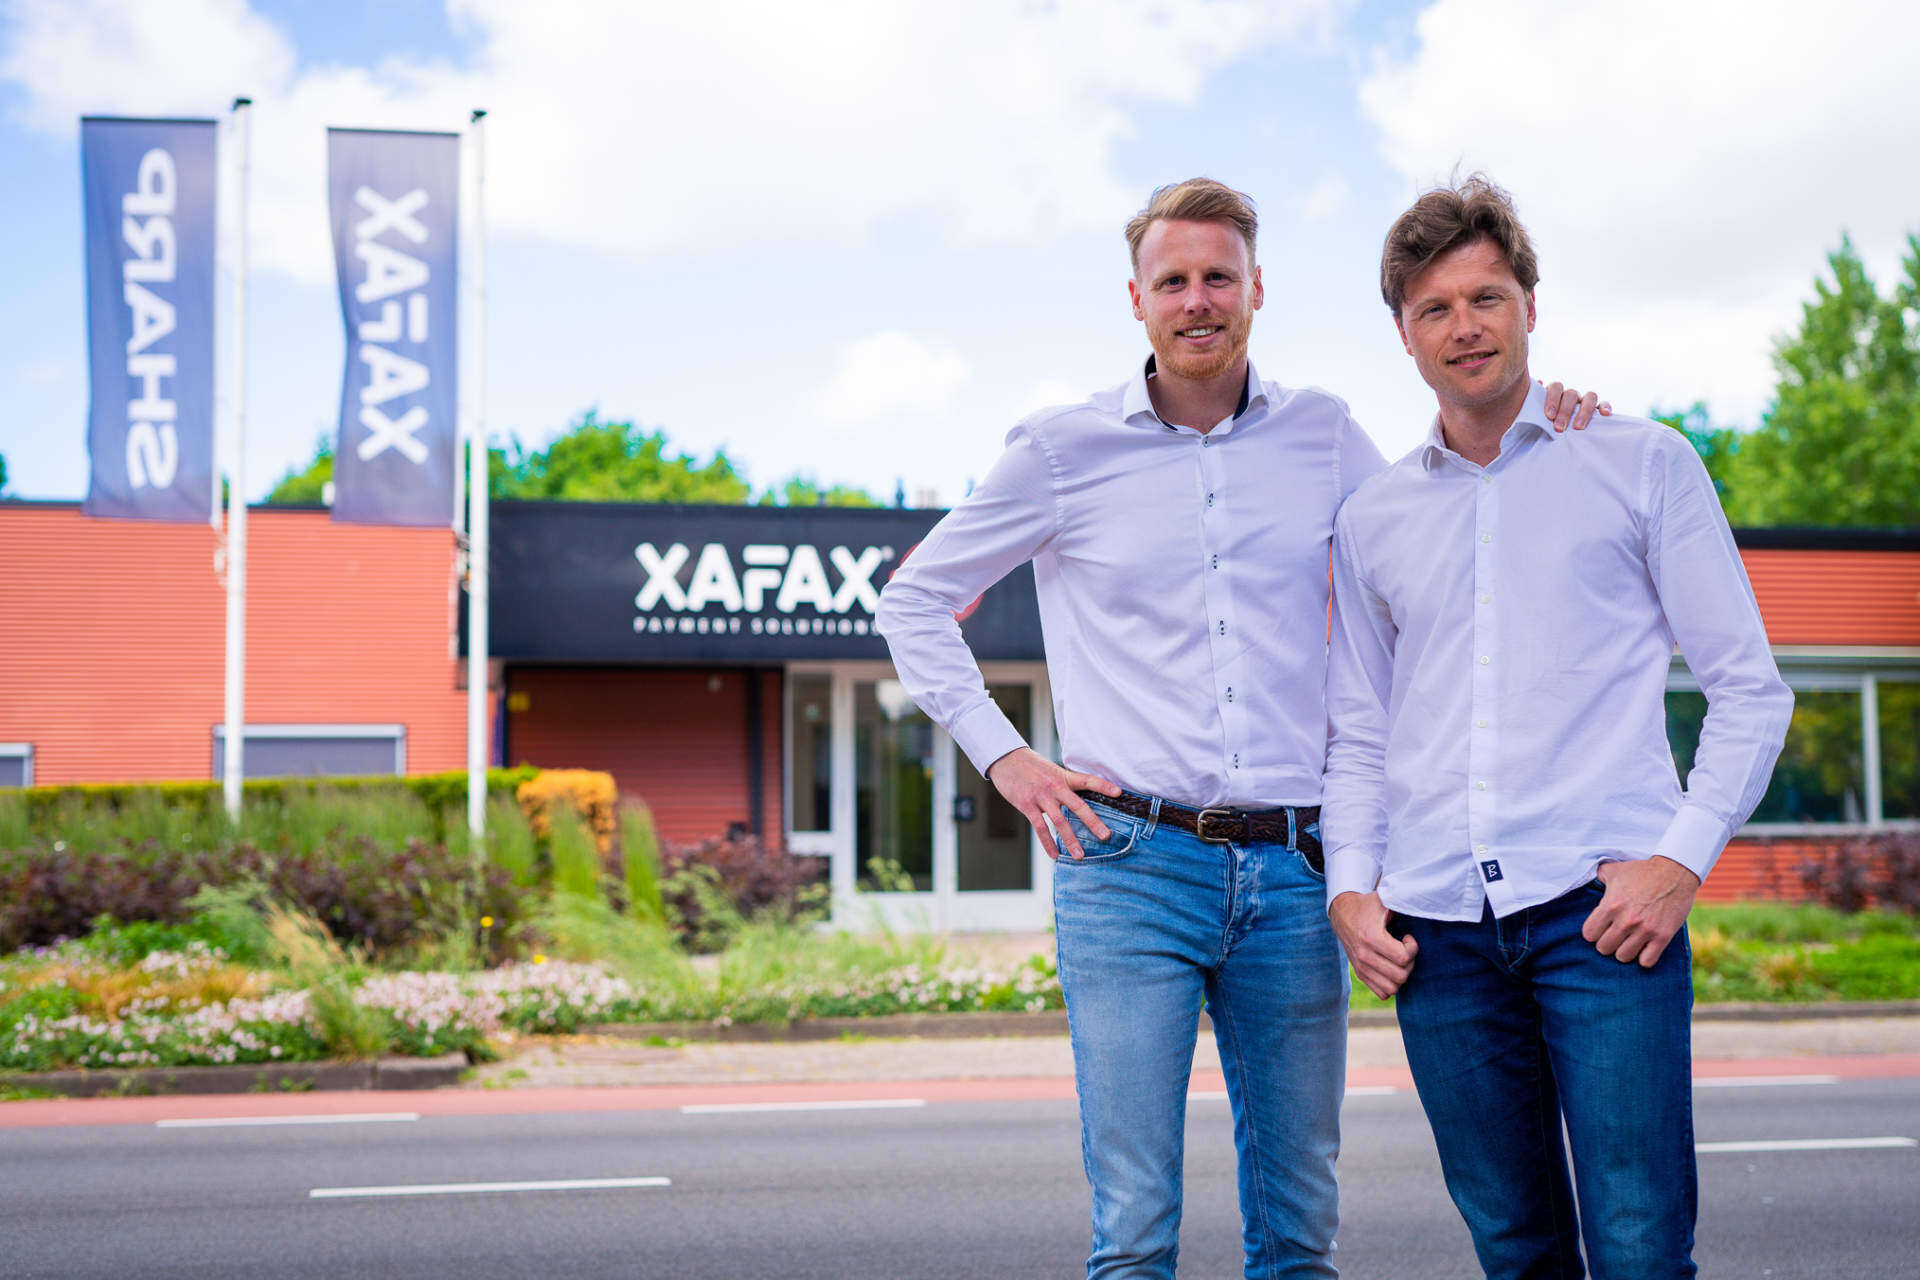 Lees onze blog Klantverhaal: Xafax, natuurlijk bij YoungSparks online marketing uit Alkmaar